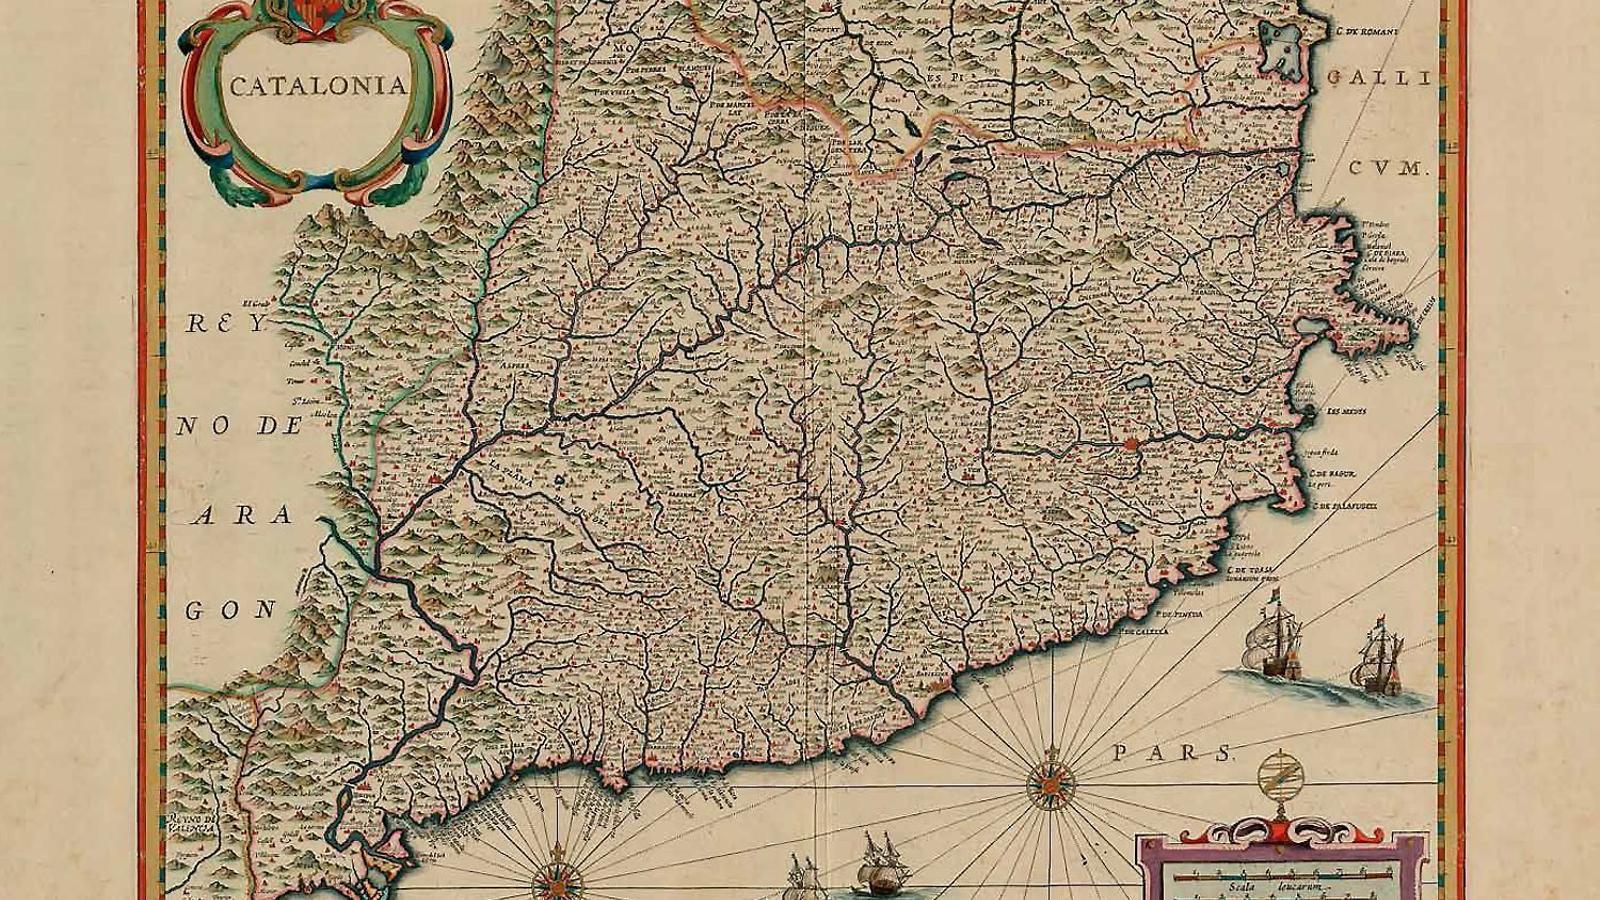 Mapa publicat l’any 1652 a Amsterdam com a part de l’obra Atlantis nova pars secunda.